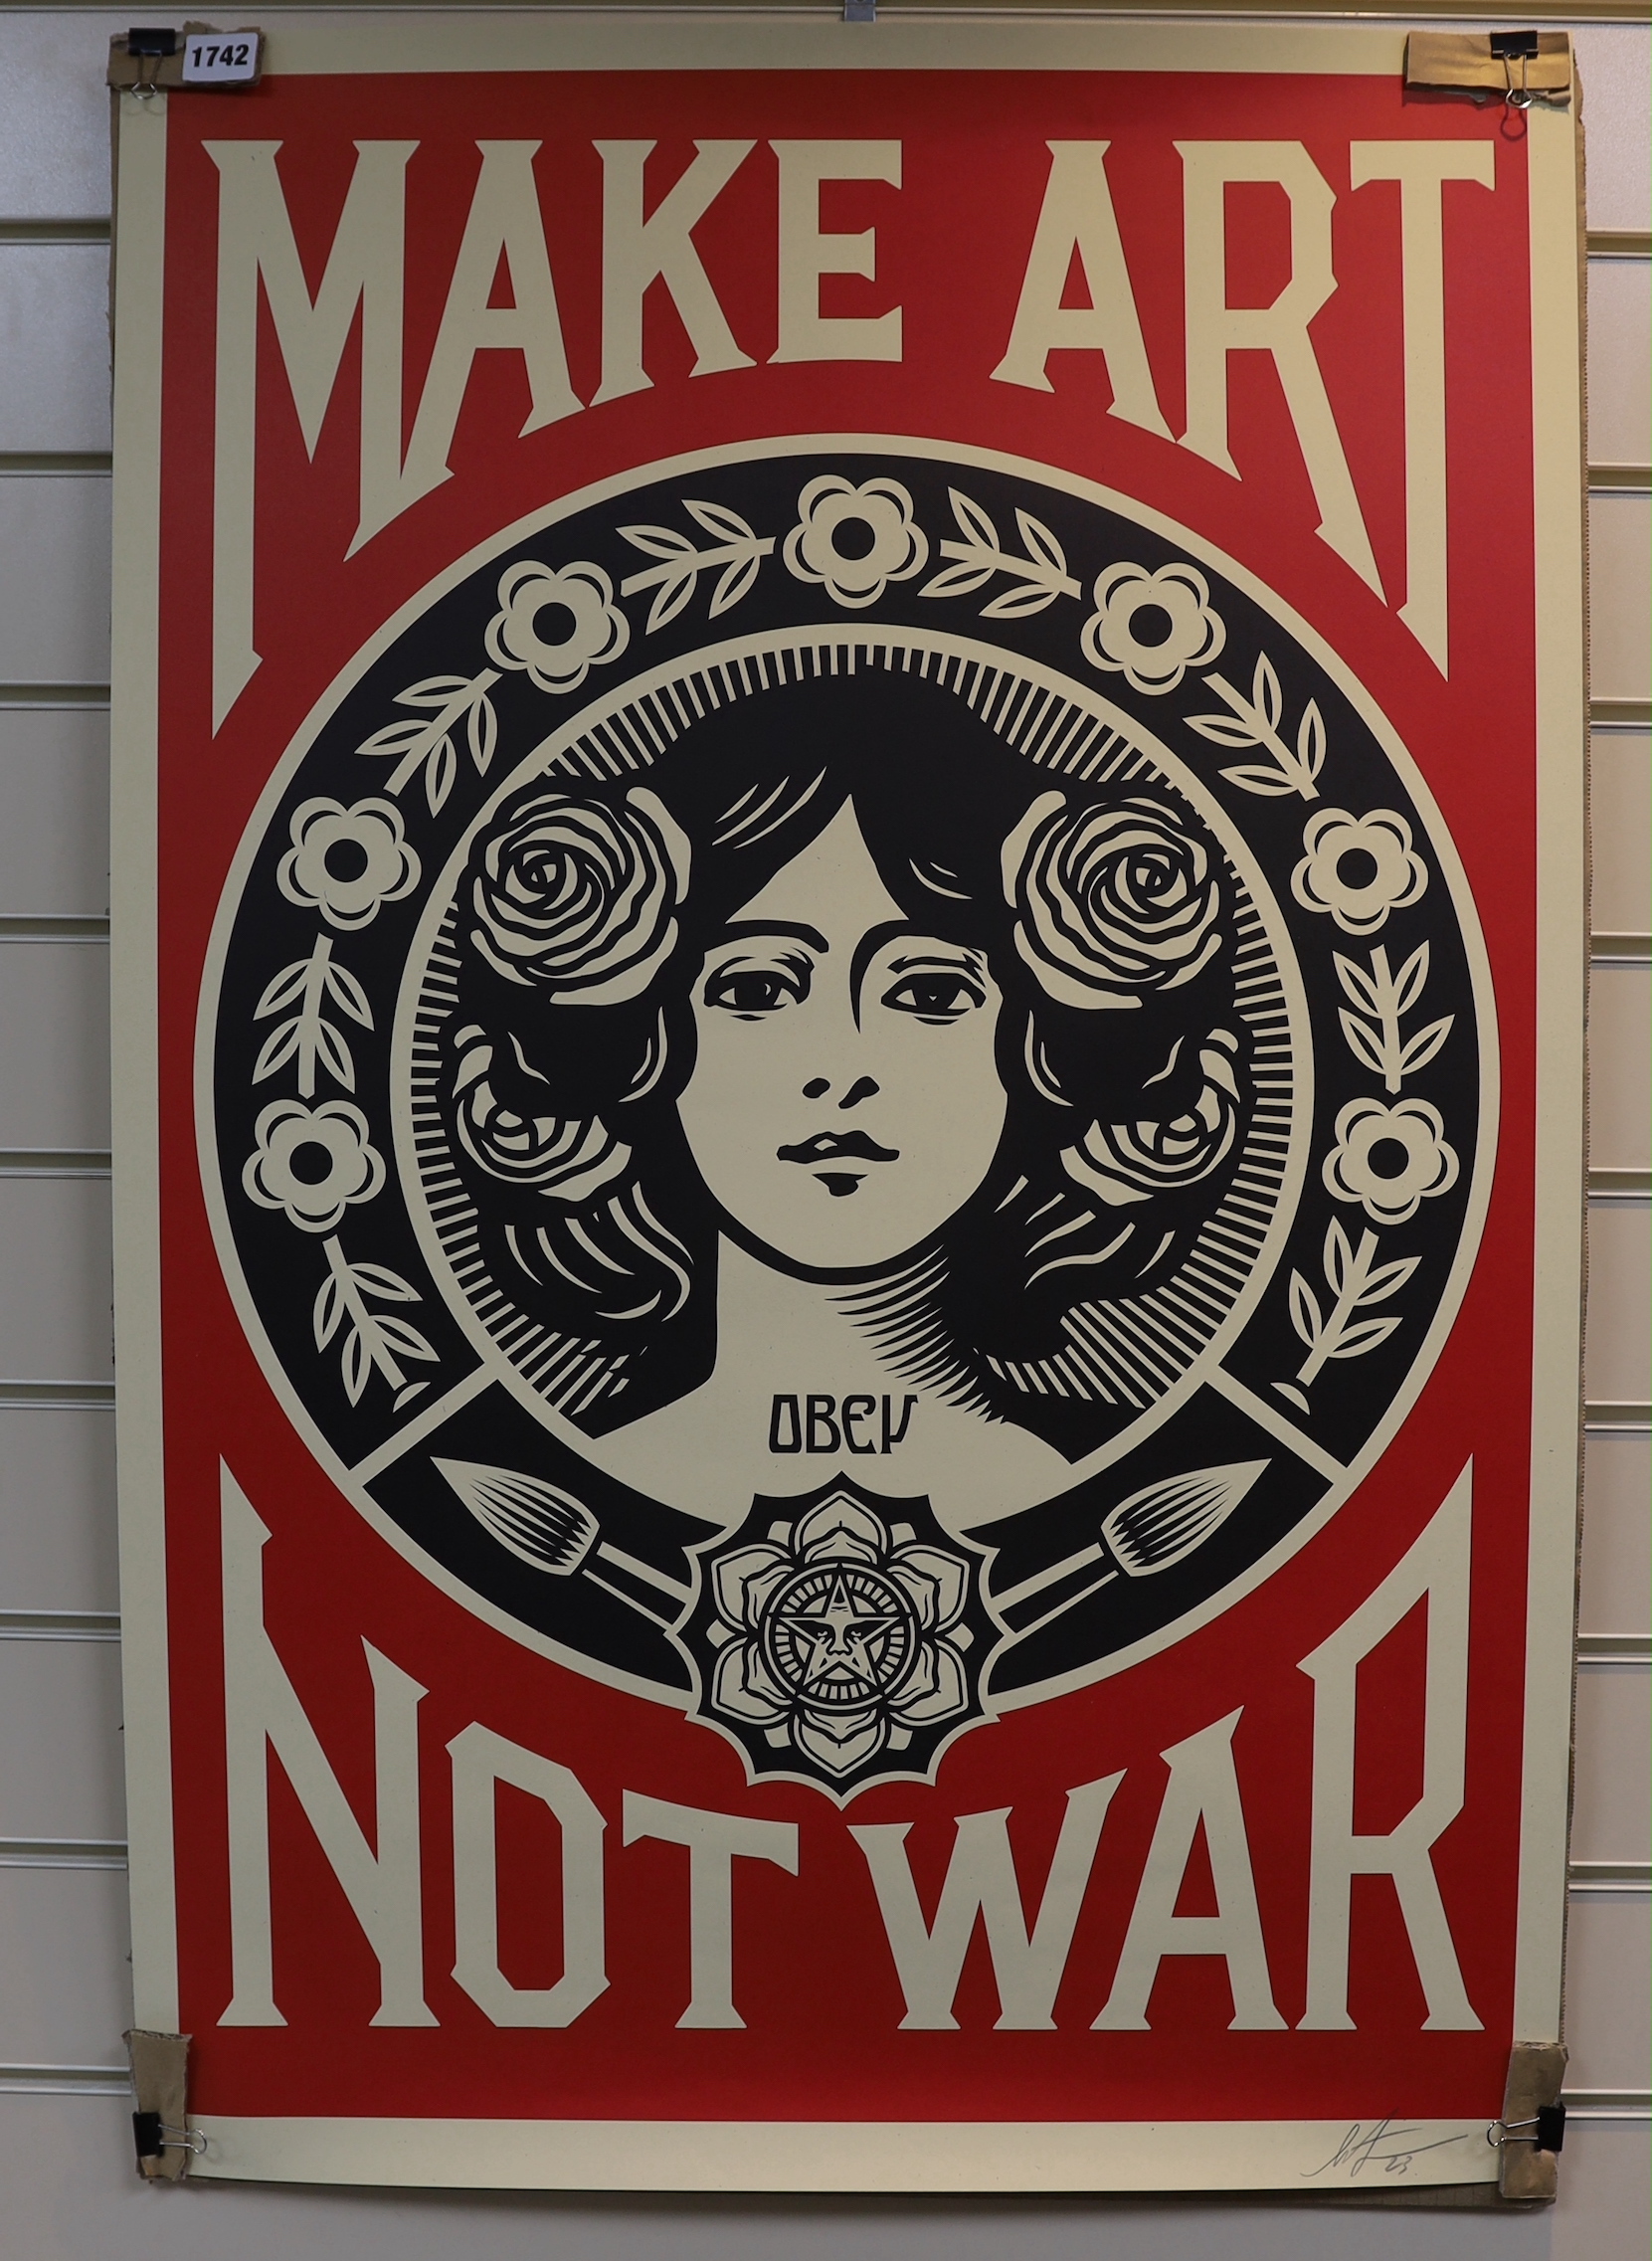 Shepherd Fairey (b.1970), lithograph poster, Make Art Not War, signed in pencil, unframed, 91 x 61cm